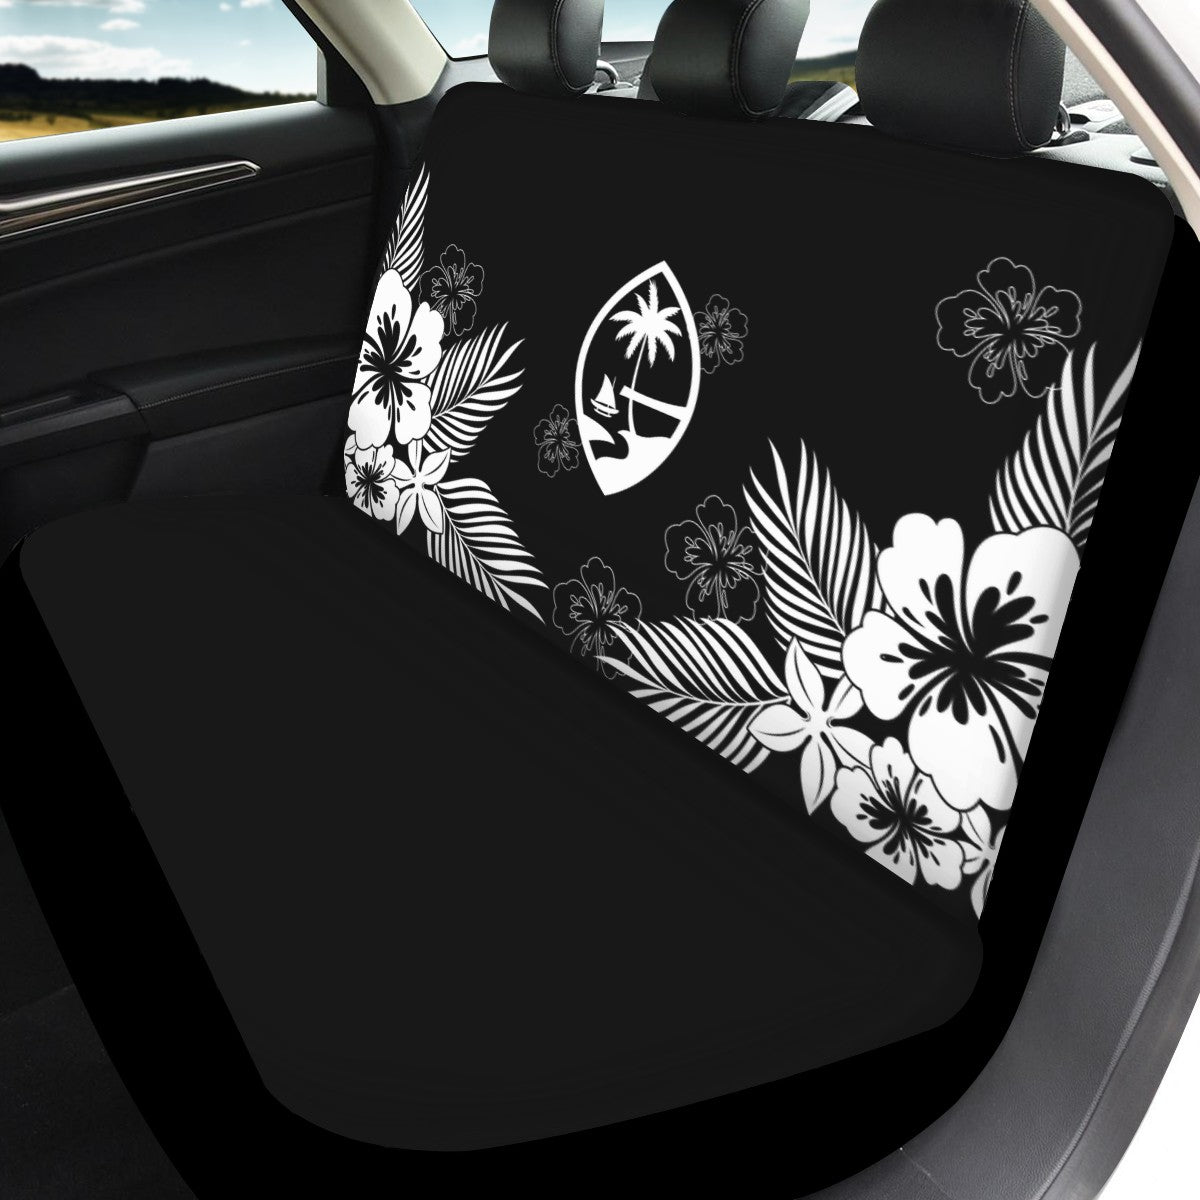 Guam Tropical Hibiscus Black Full Set Car Seat Covers (Set of 3)